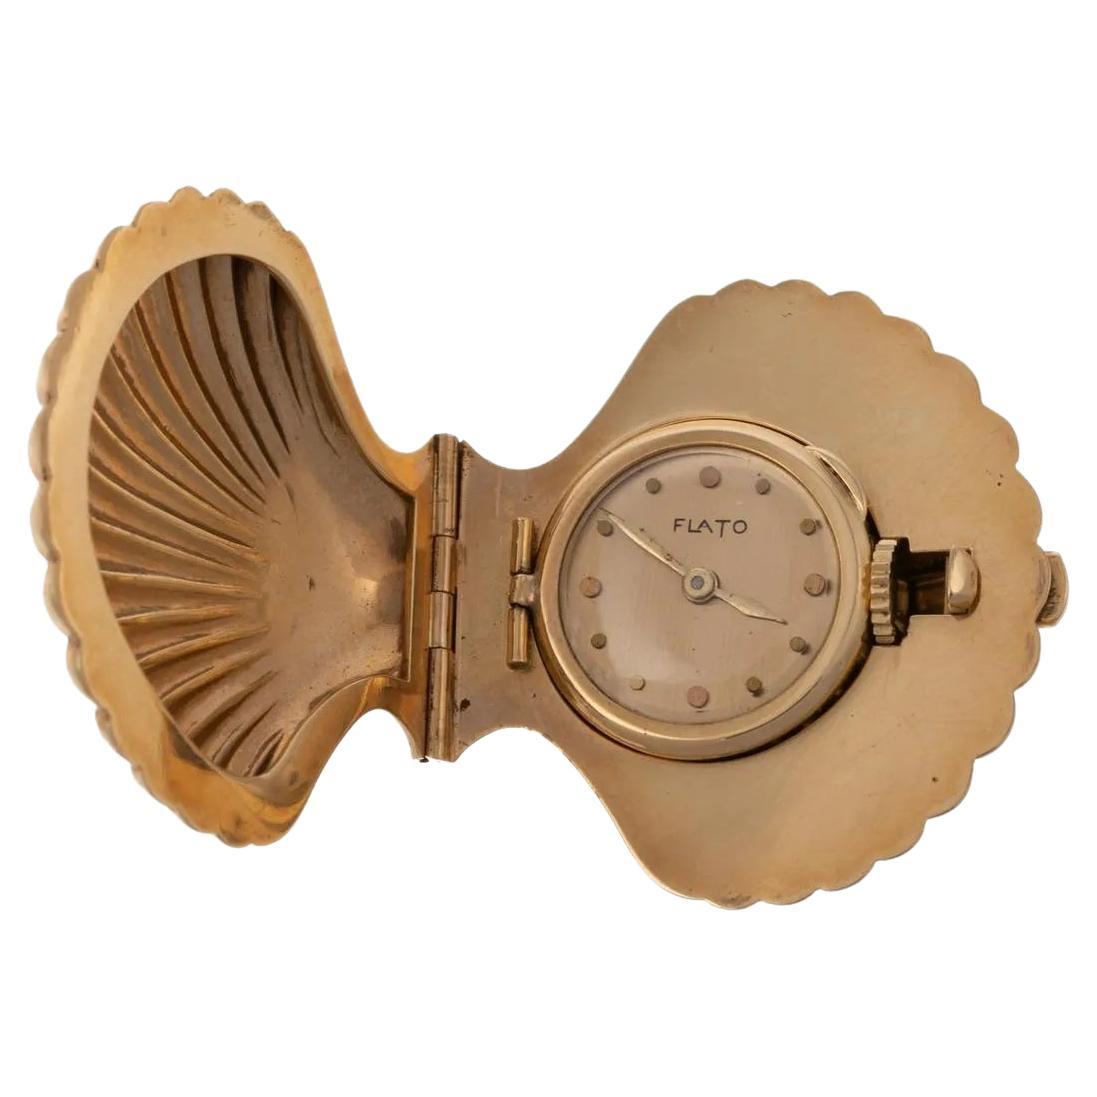 Paul Flato Petite montre de poche en or jaune 14 carats avec coquillages, milieu du siècle dernier